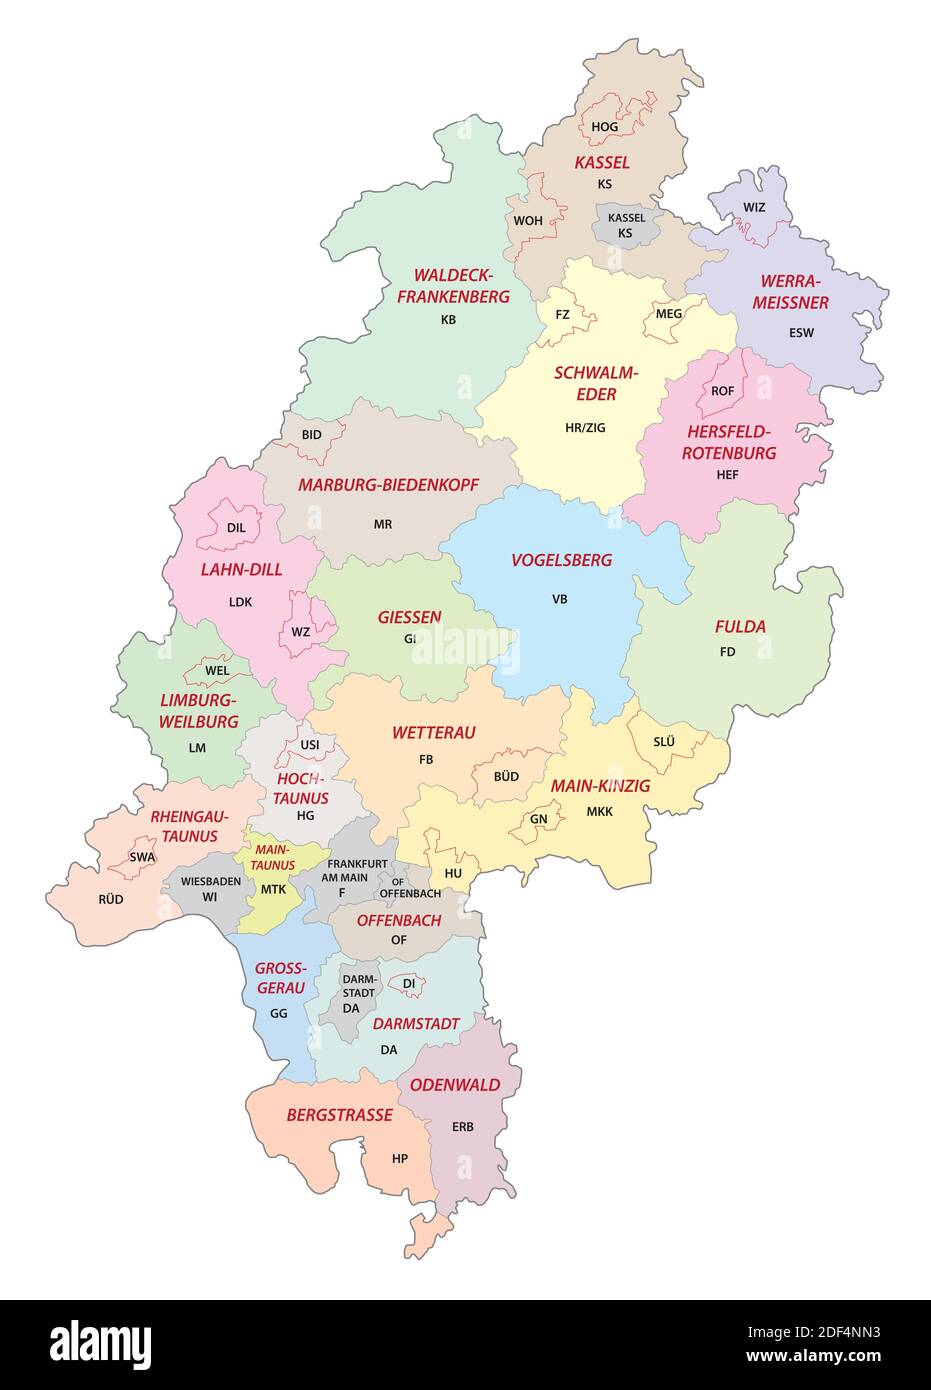 Carte vectorielle du district de Hessian avec plaques d'immatriculation des véhicules, Allemagne Illustration de Vecteur